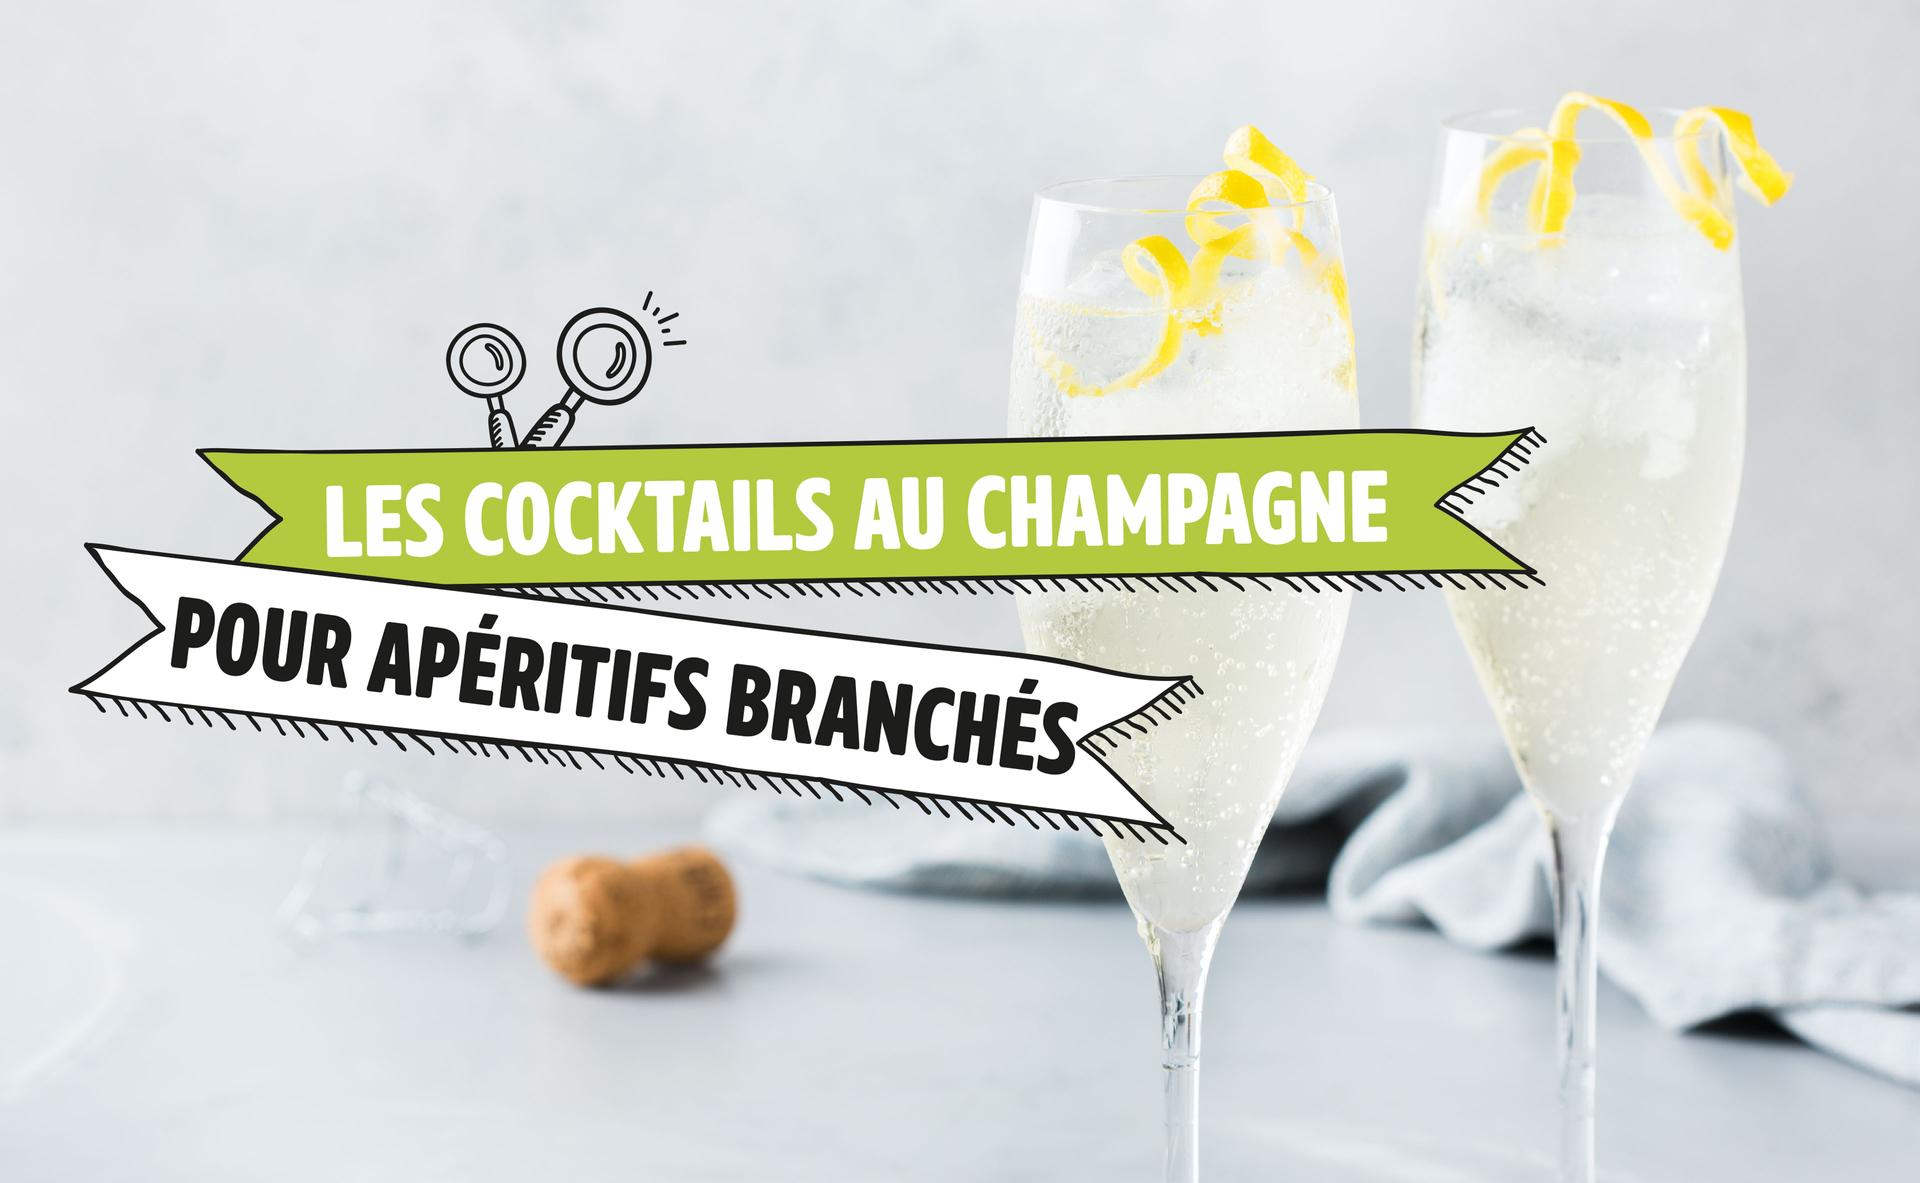 Les cocktails au champagne pour apéritifs branchés